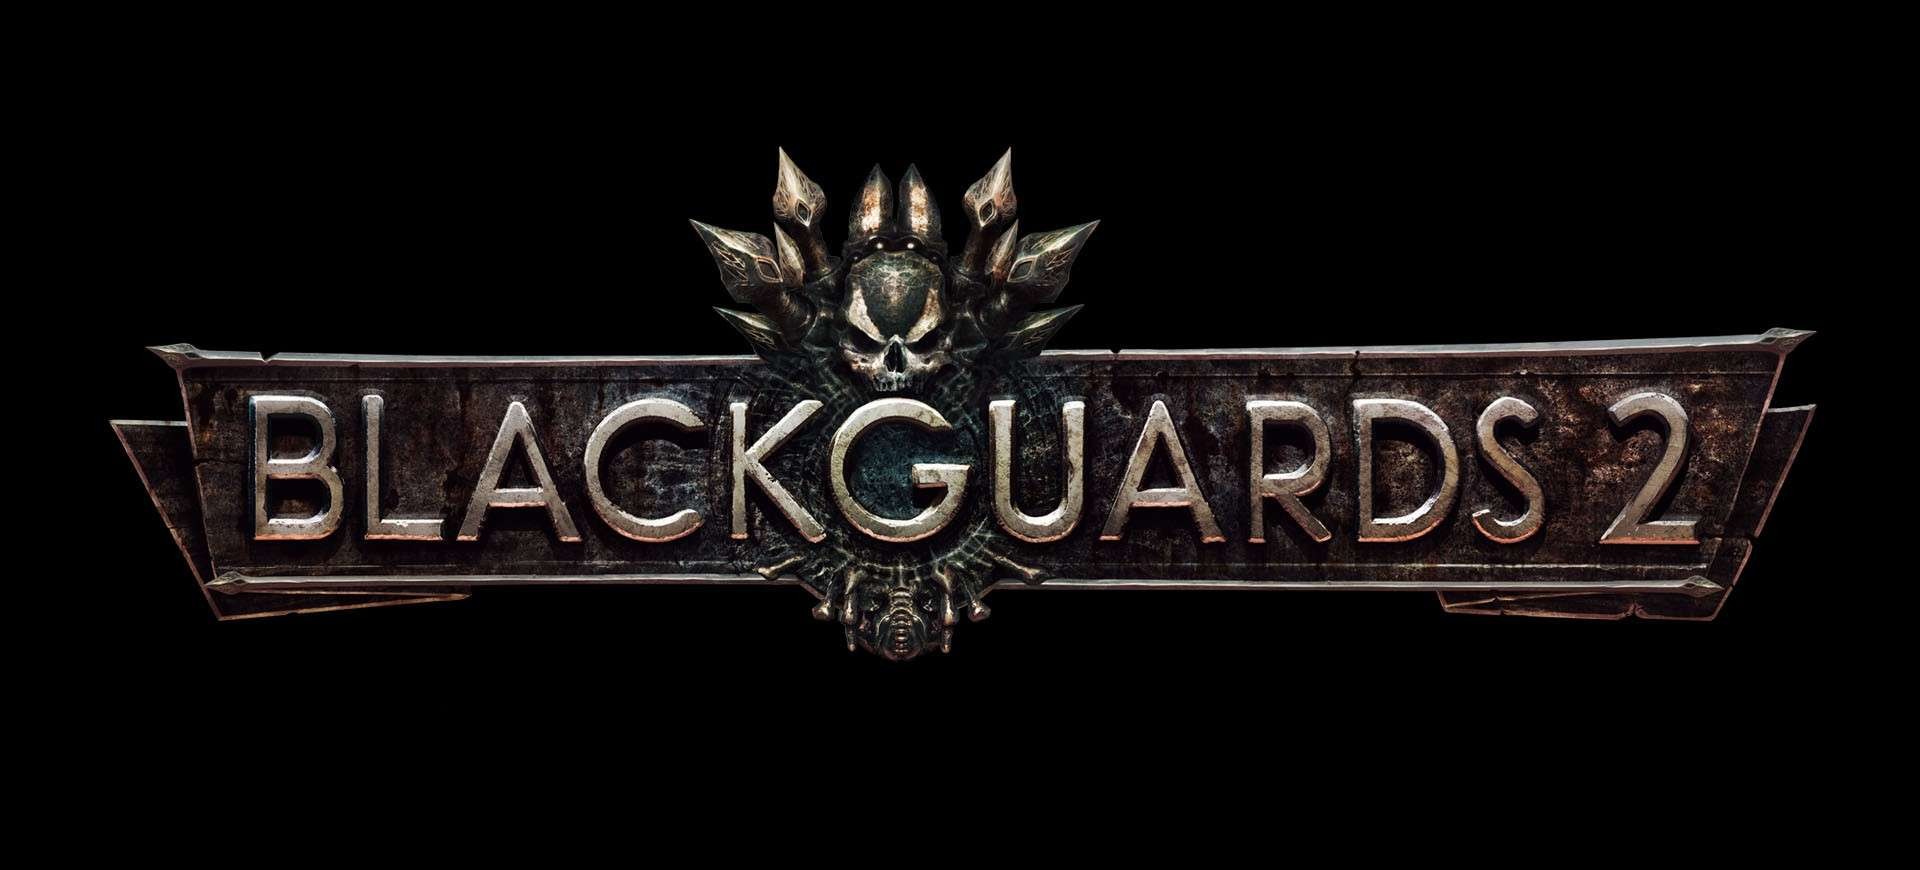 Blackguards 2 - Đánh Giá Game